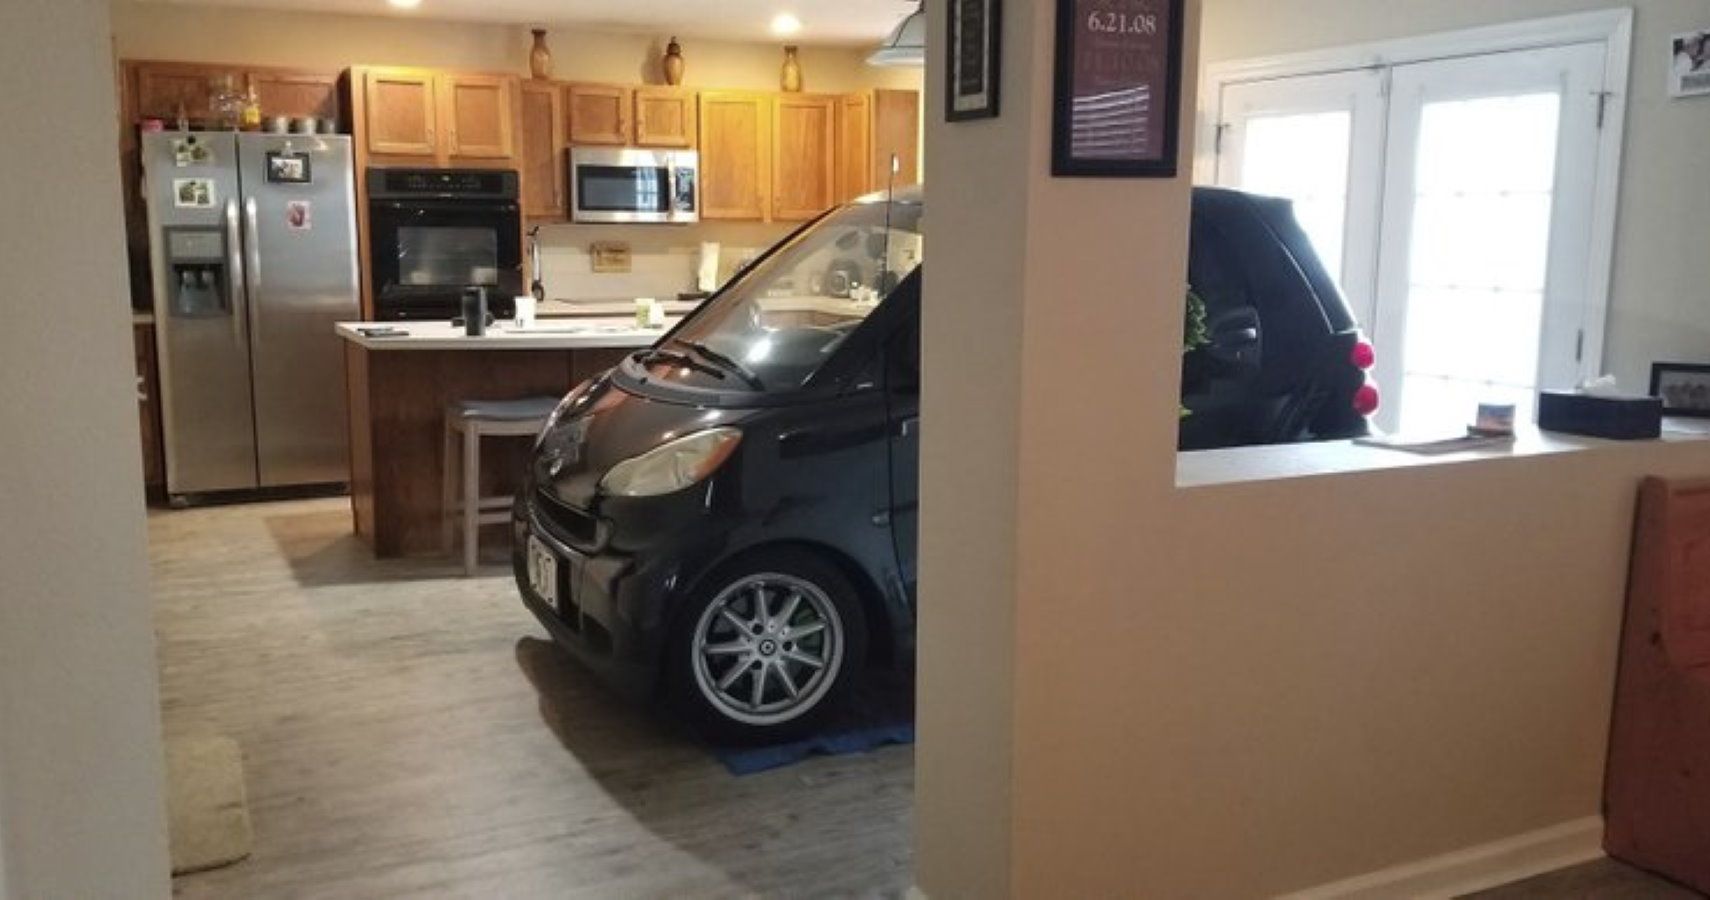 Smart Car In Kitchen